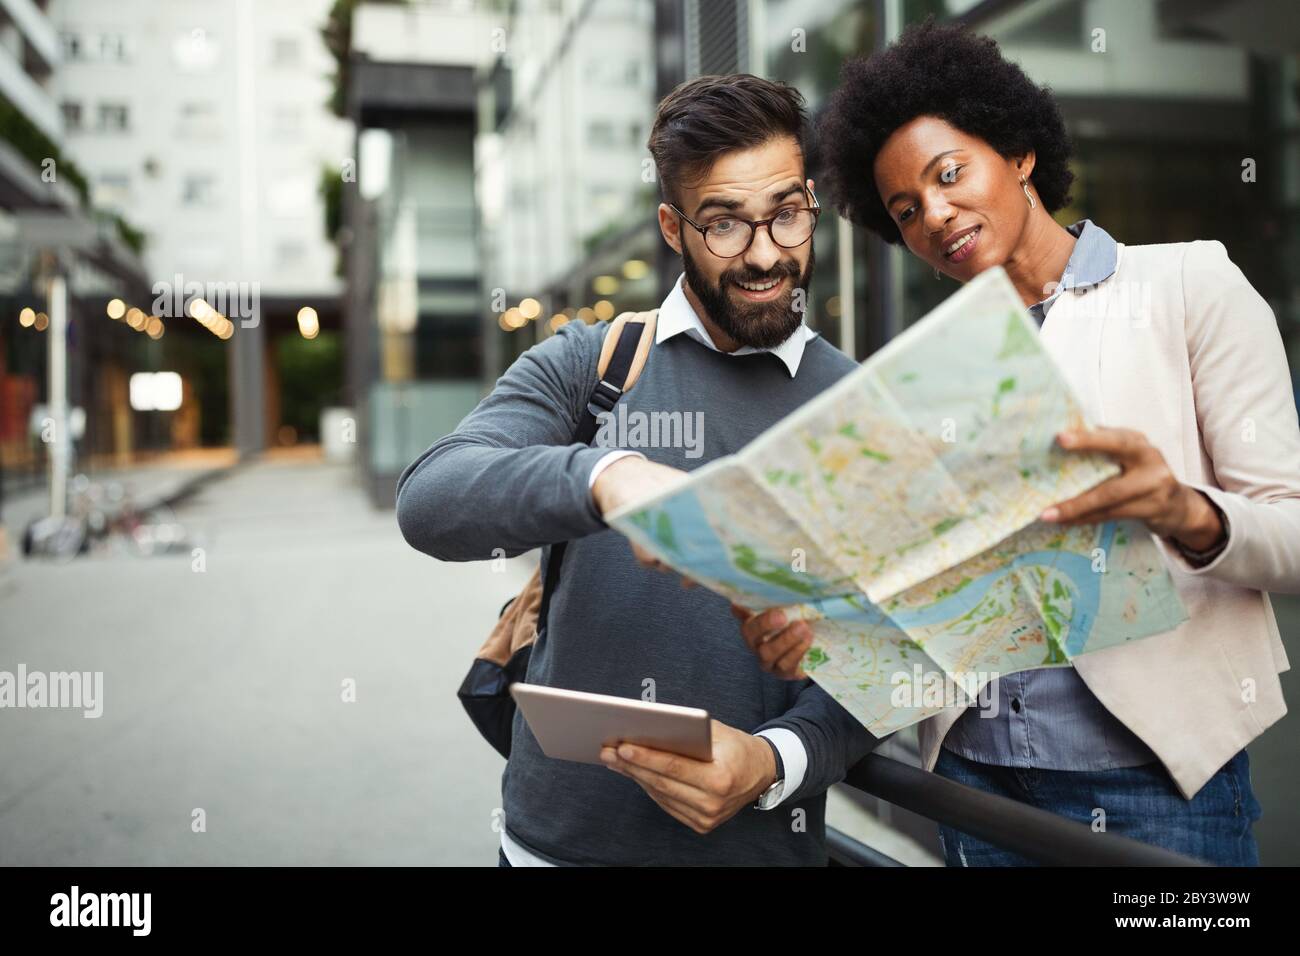 Verlorenes glückliches Paar in der Stadt, das eine Karte hält. Reisen, Tourismus, Menschen Konzept Stockfoto